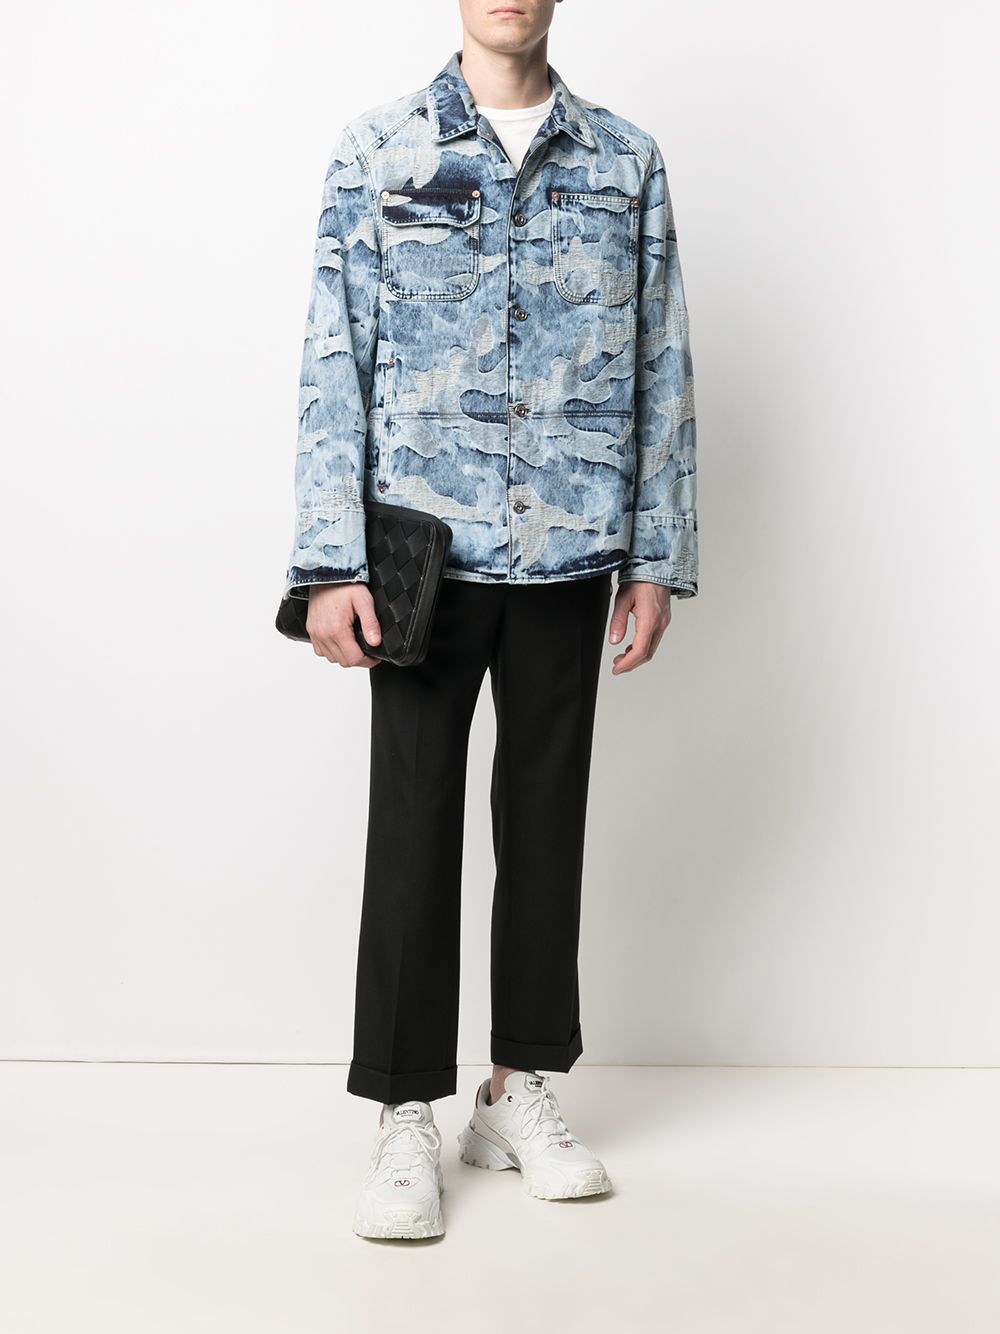 фото Valentino джинсовая куртка с камуфляжным принтом